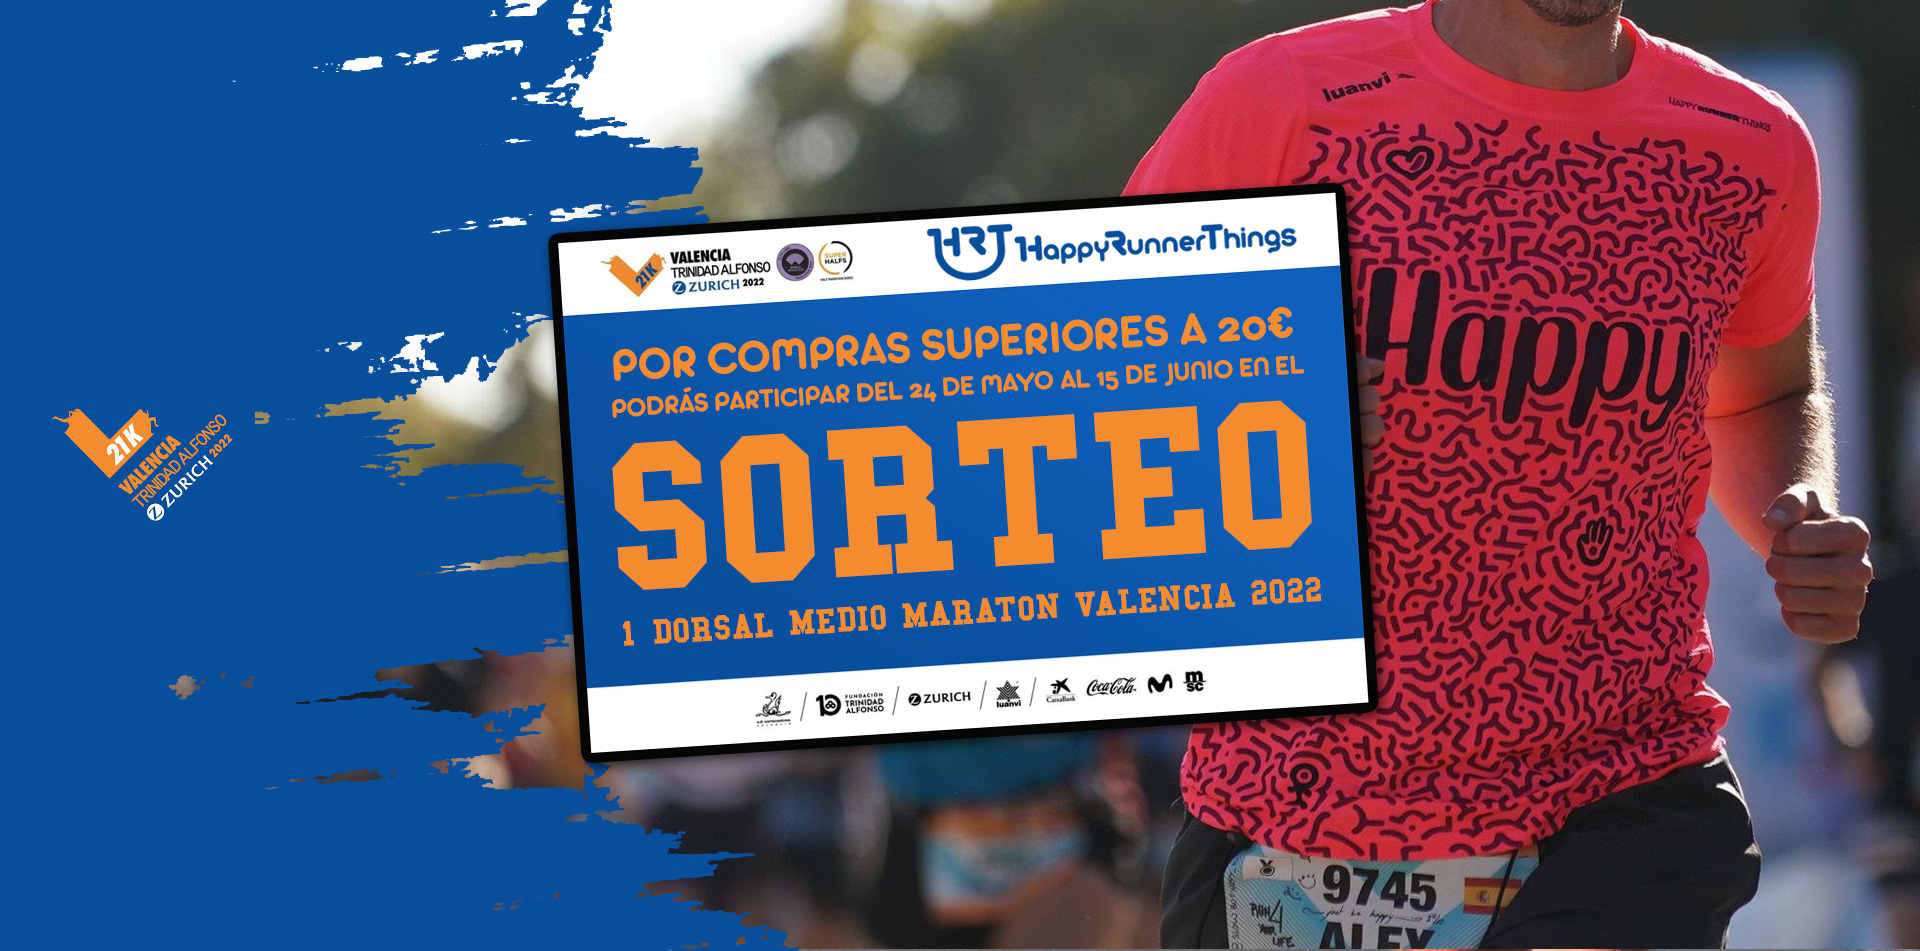 Colgar Esmerado creativo Sorteo Dorsal Medio Maratón Valencia 2022 - Happy Runners Blog